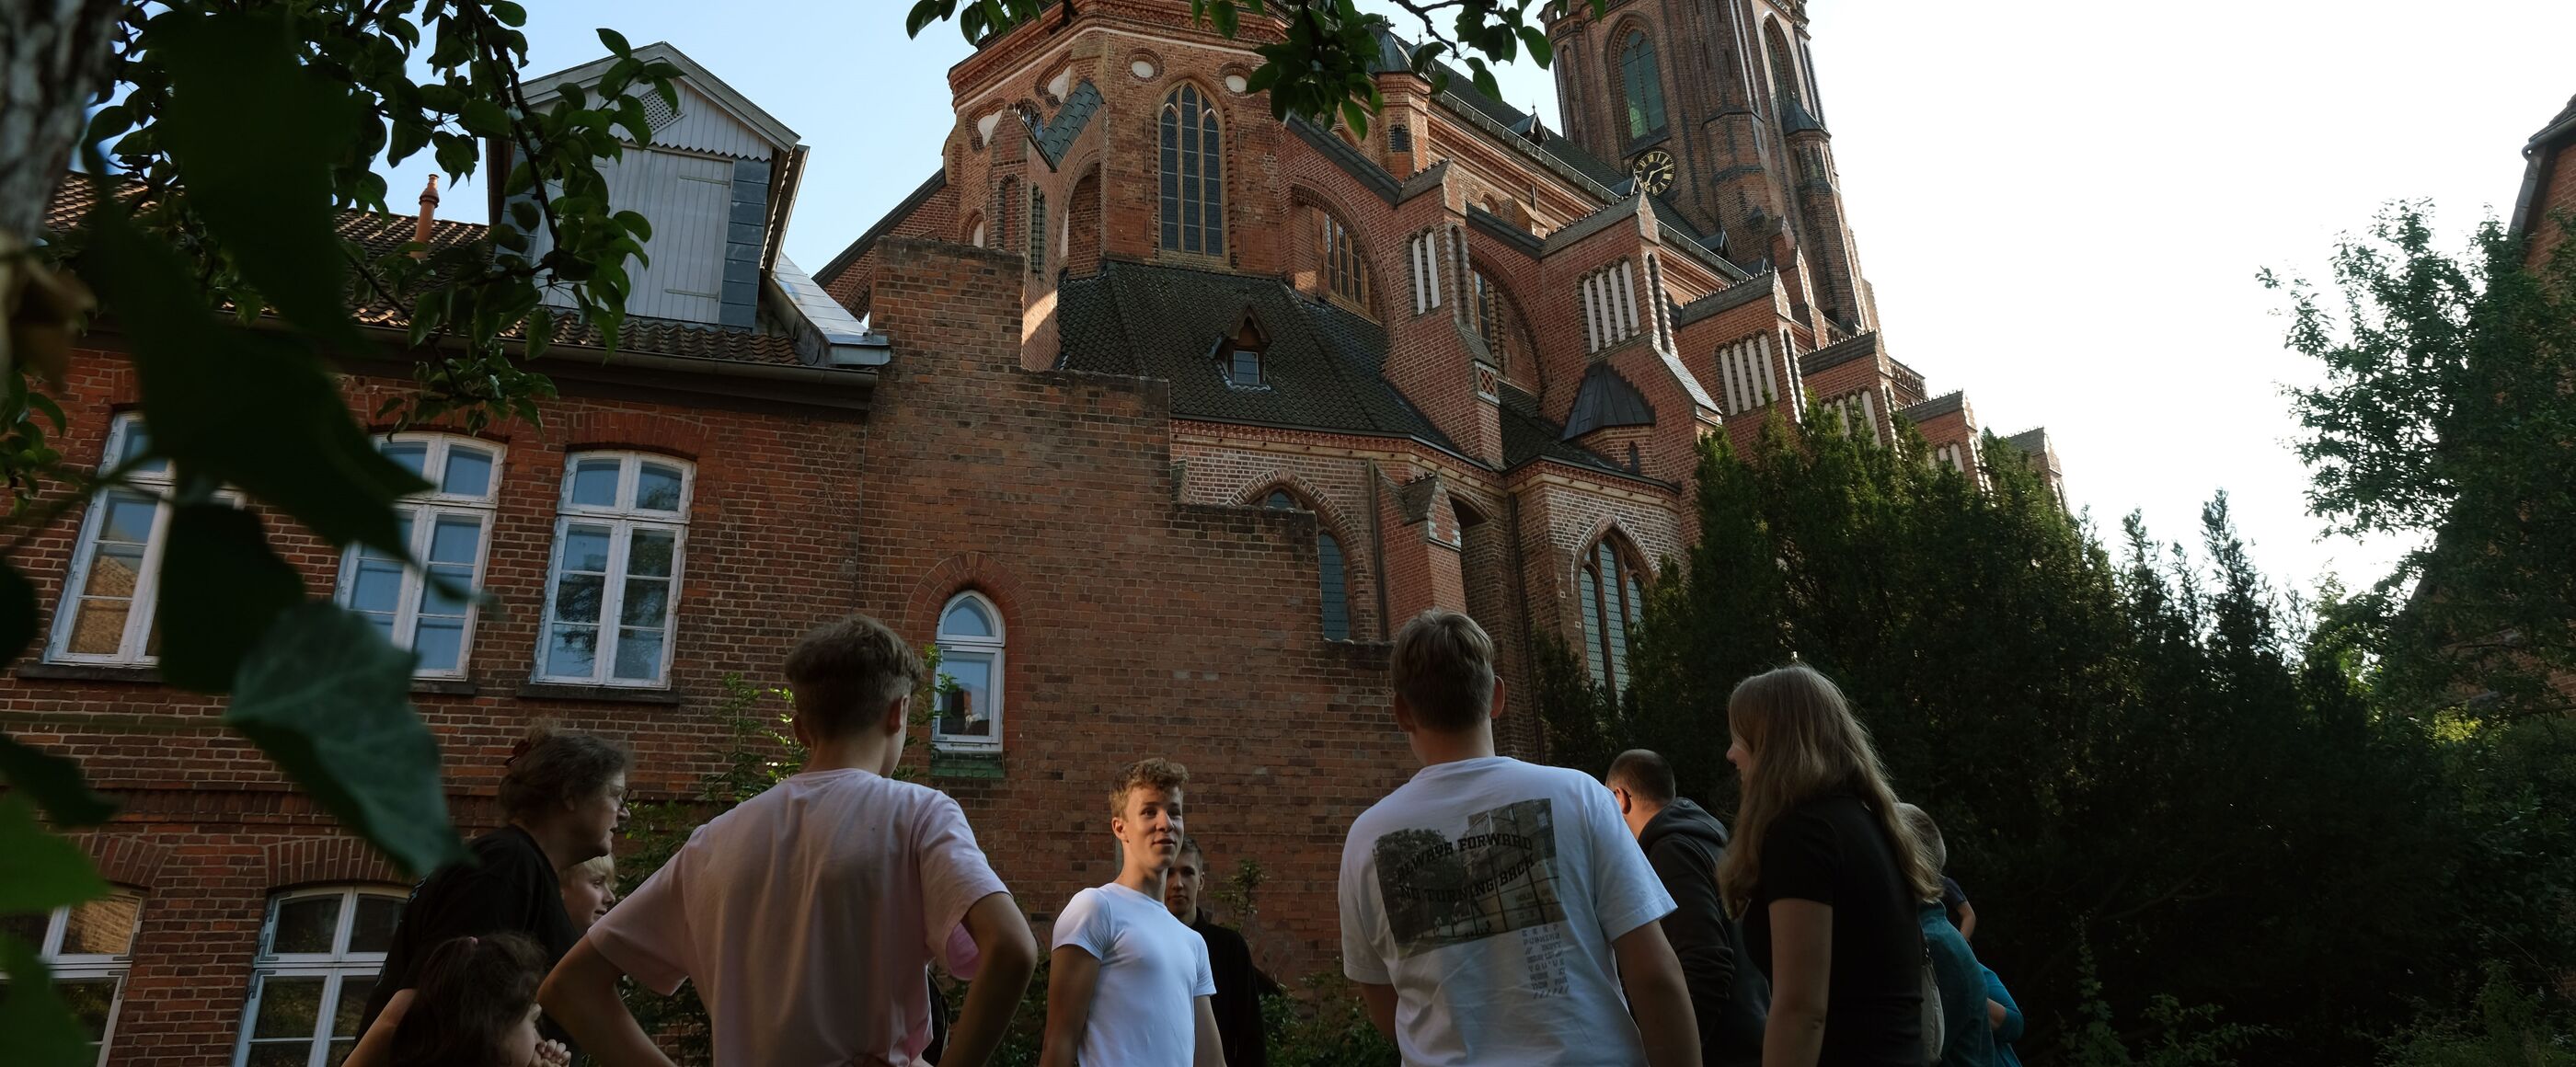 Mehrere junge Menschen stehen vor einer Kirche, sie sind von unten fotografiert. Die Sonne geht unter.